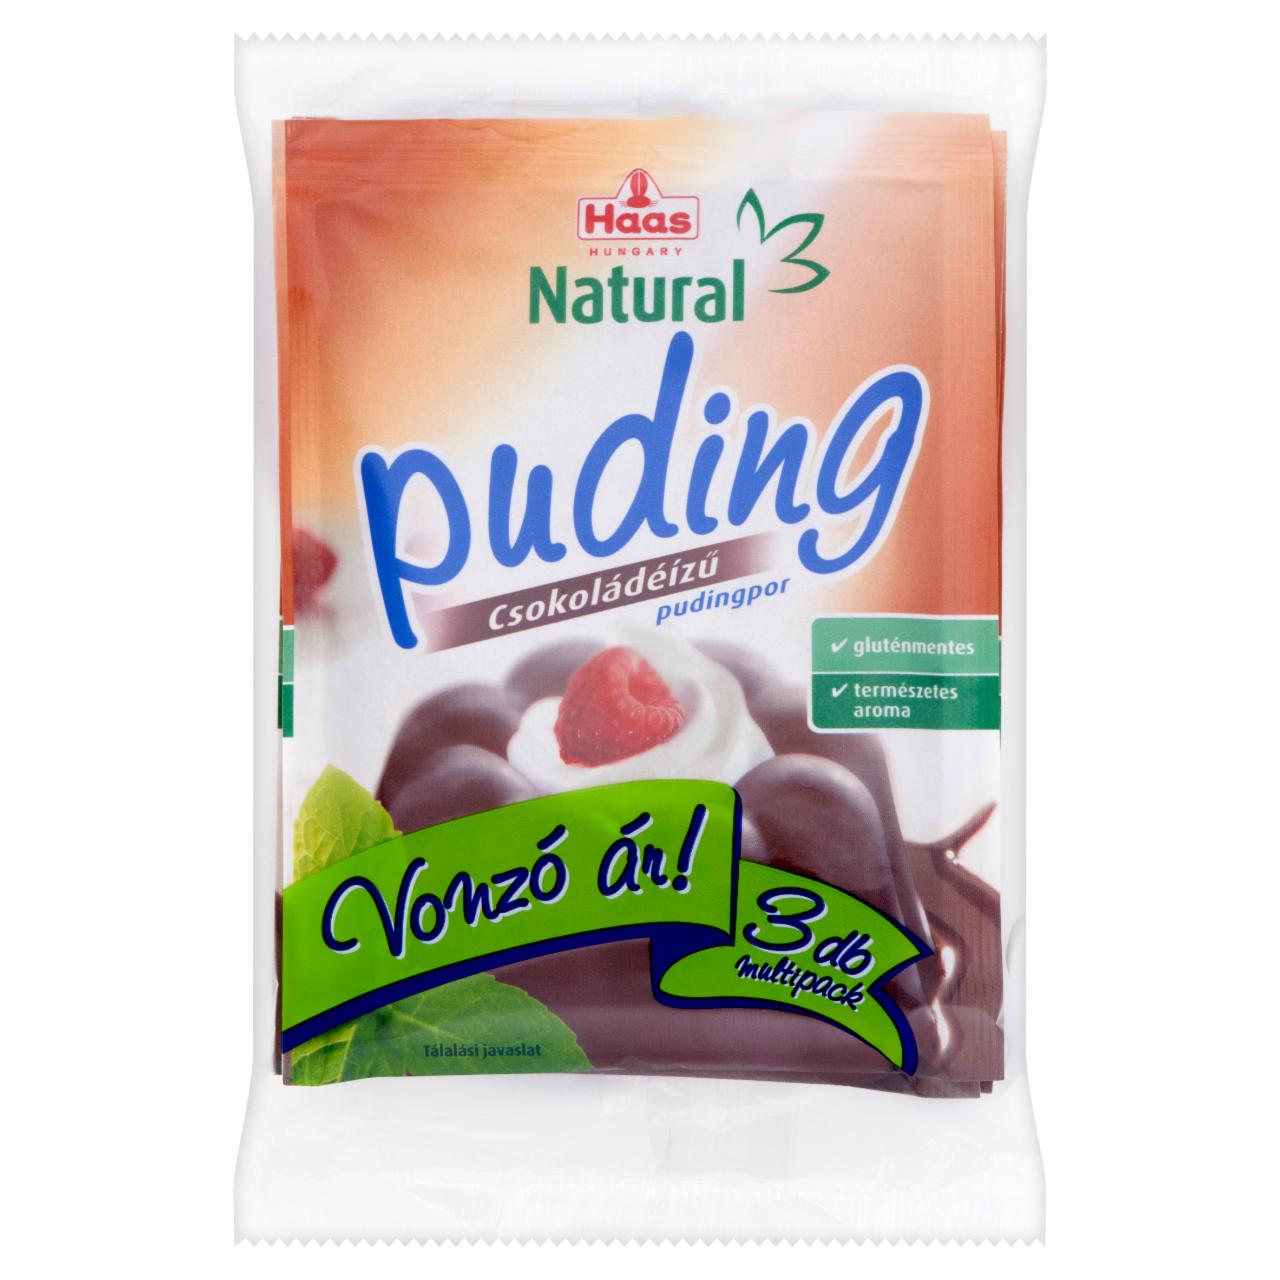 Képek - Haas Natural gluténmentes csokoládéízű pudingpor 3 x 44 g